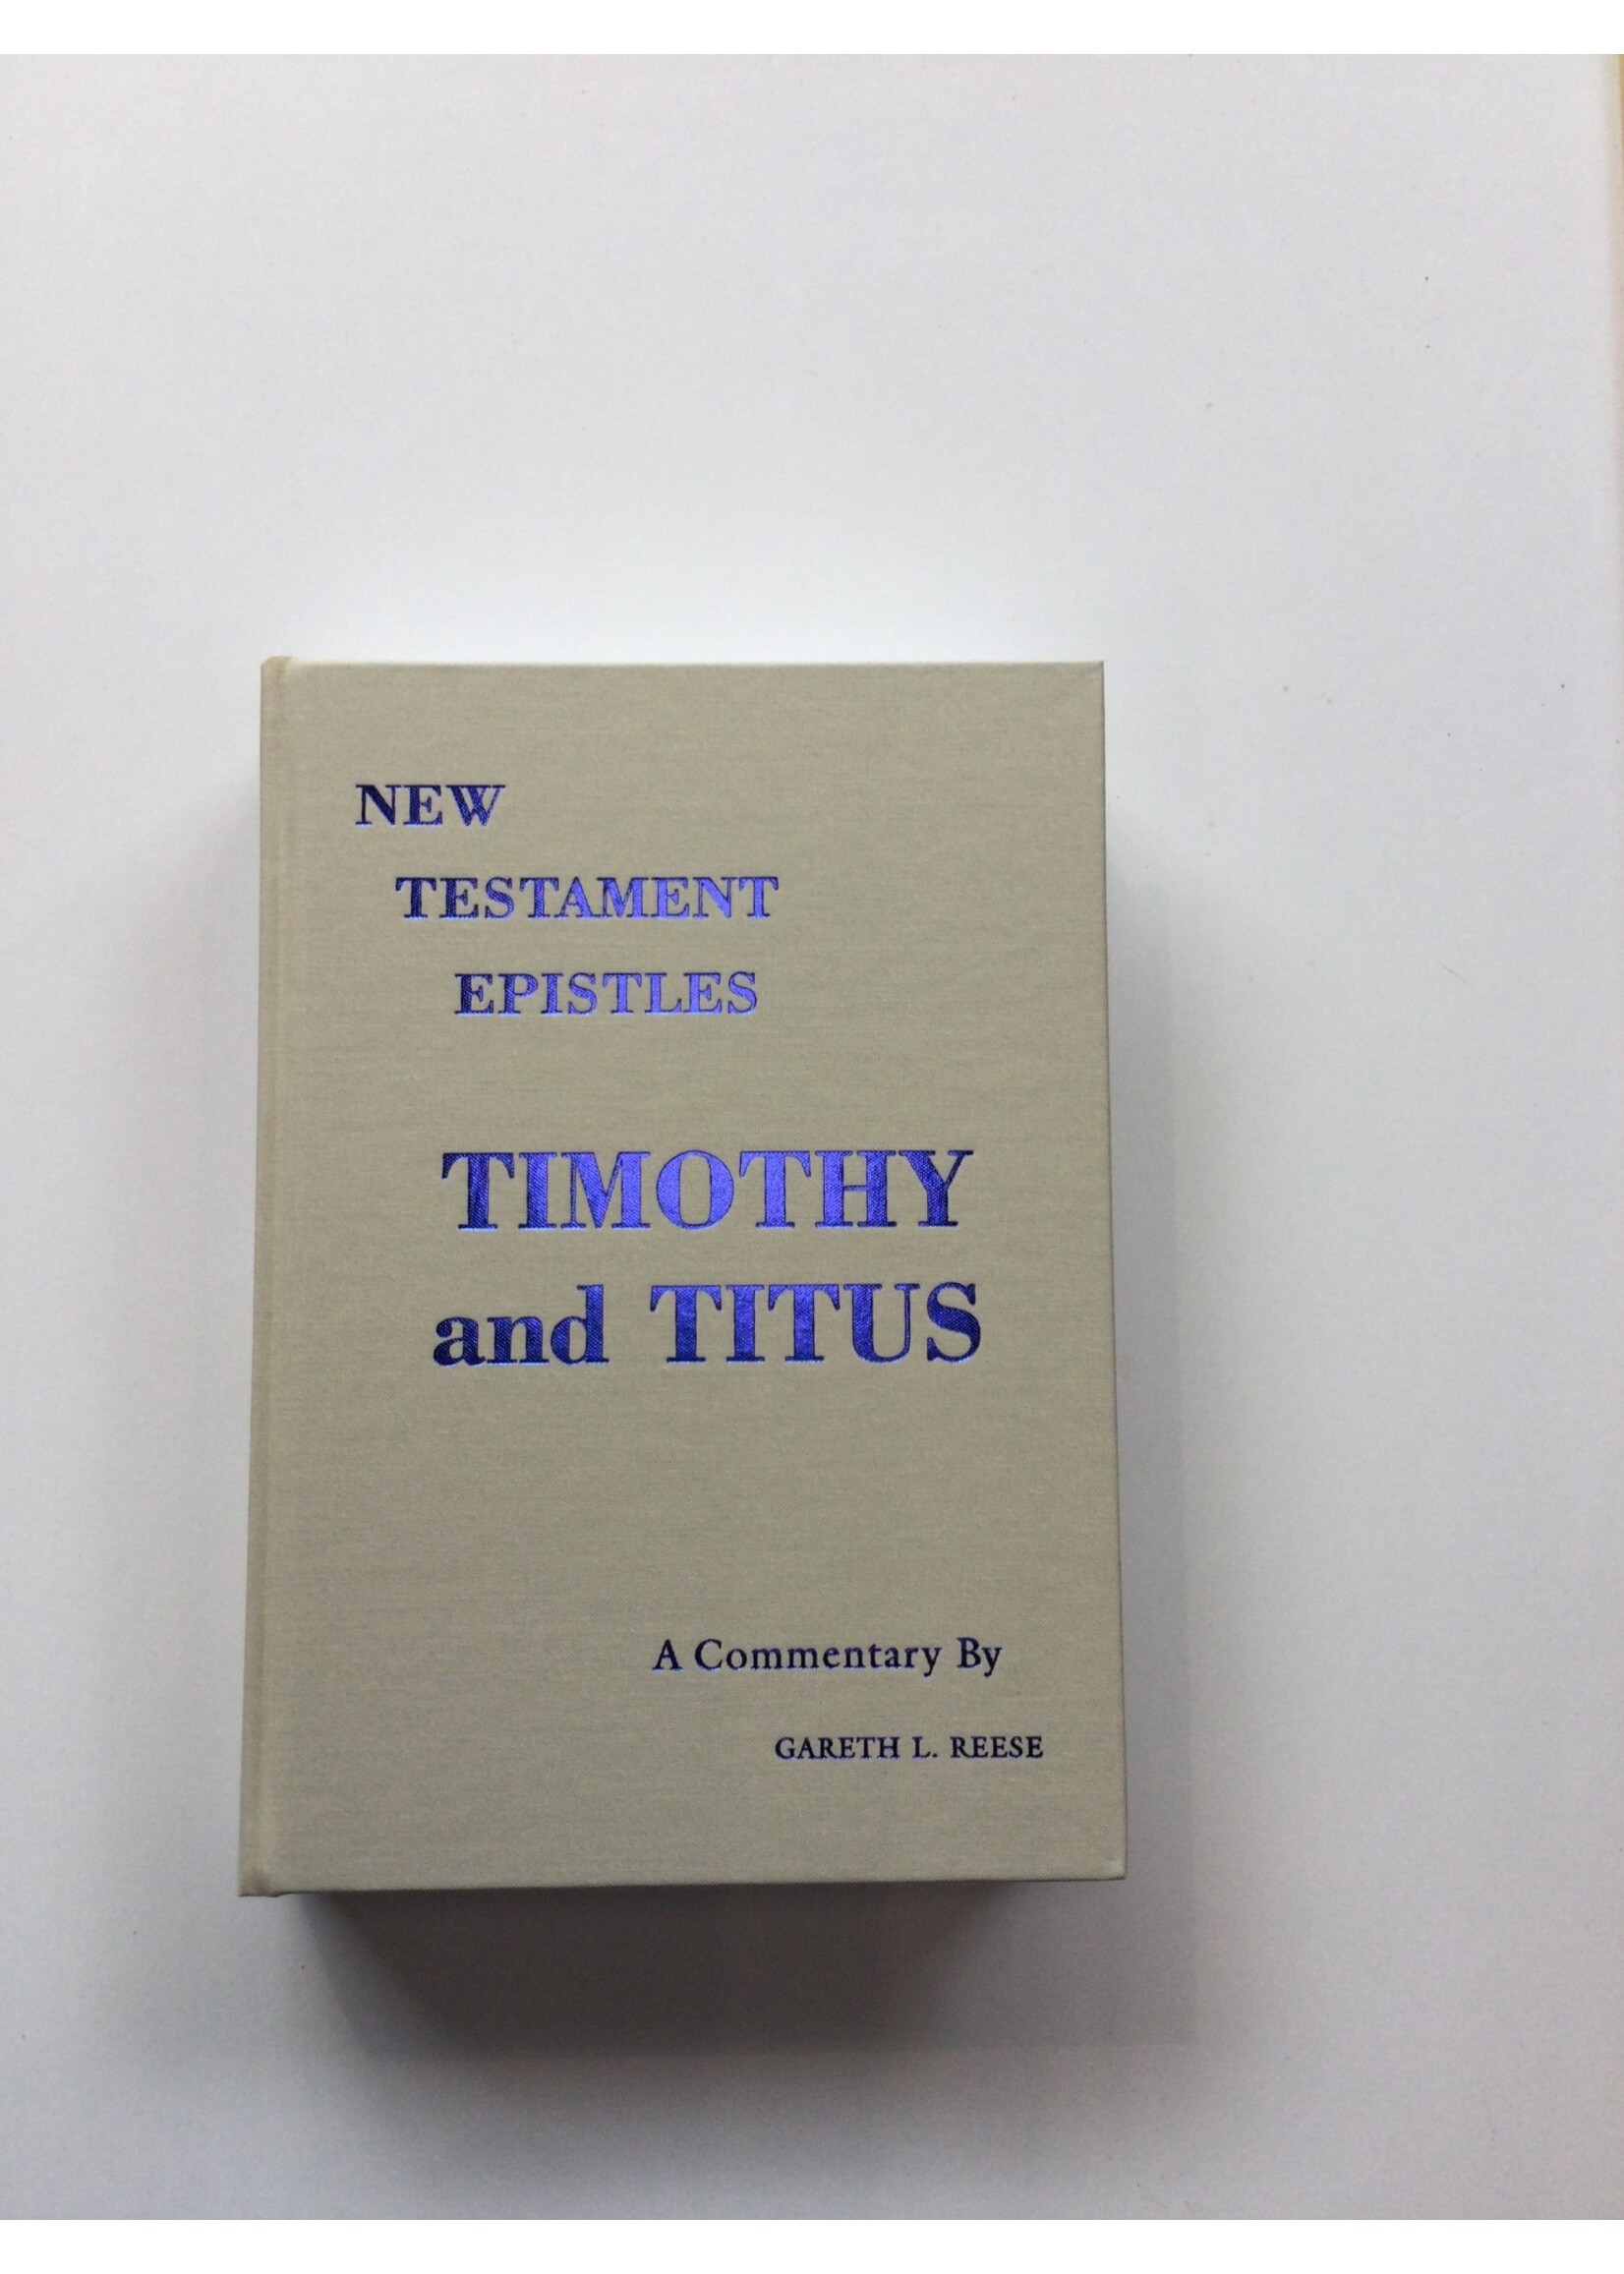 TIMOTHY & TITUS